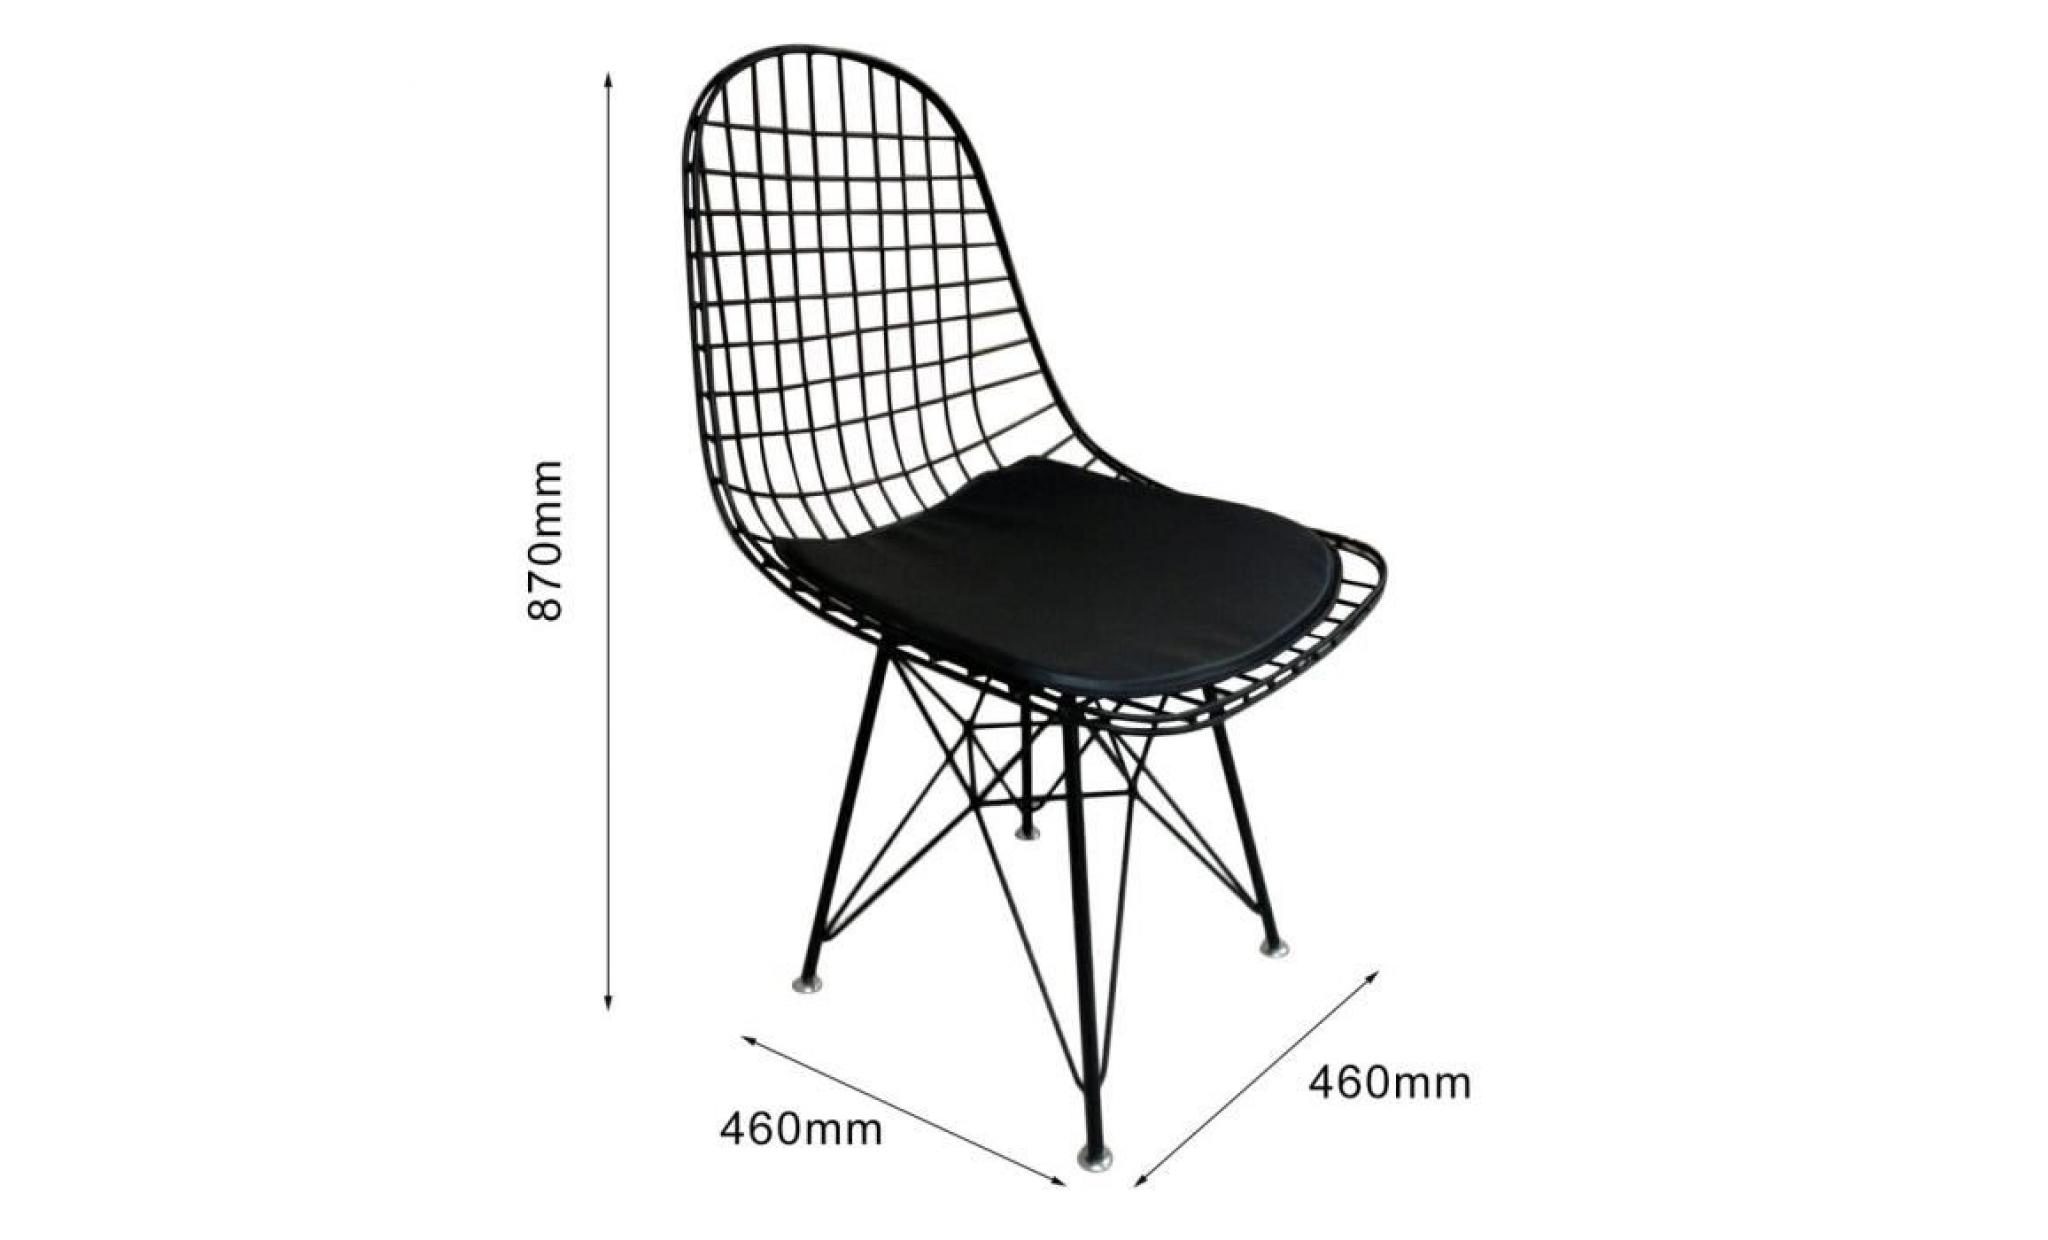 chaise eames inspiré confortable noir métal treillis métallique chaise À manger intérieur chaise lounge restaurant bureau maison déc pas cher